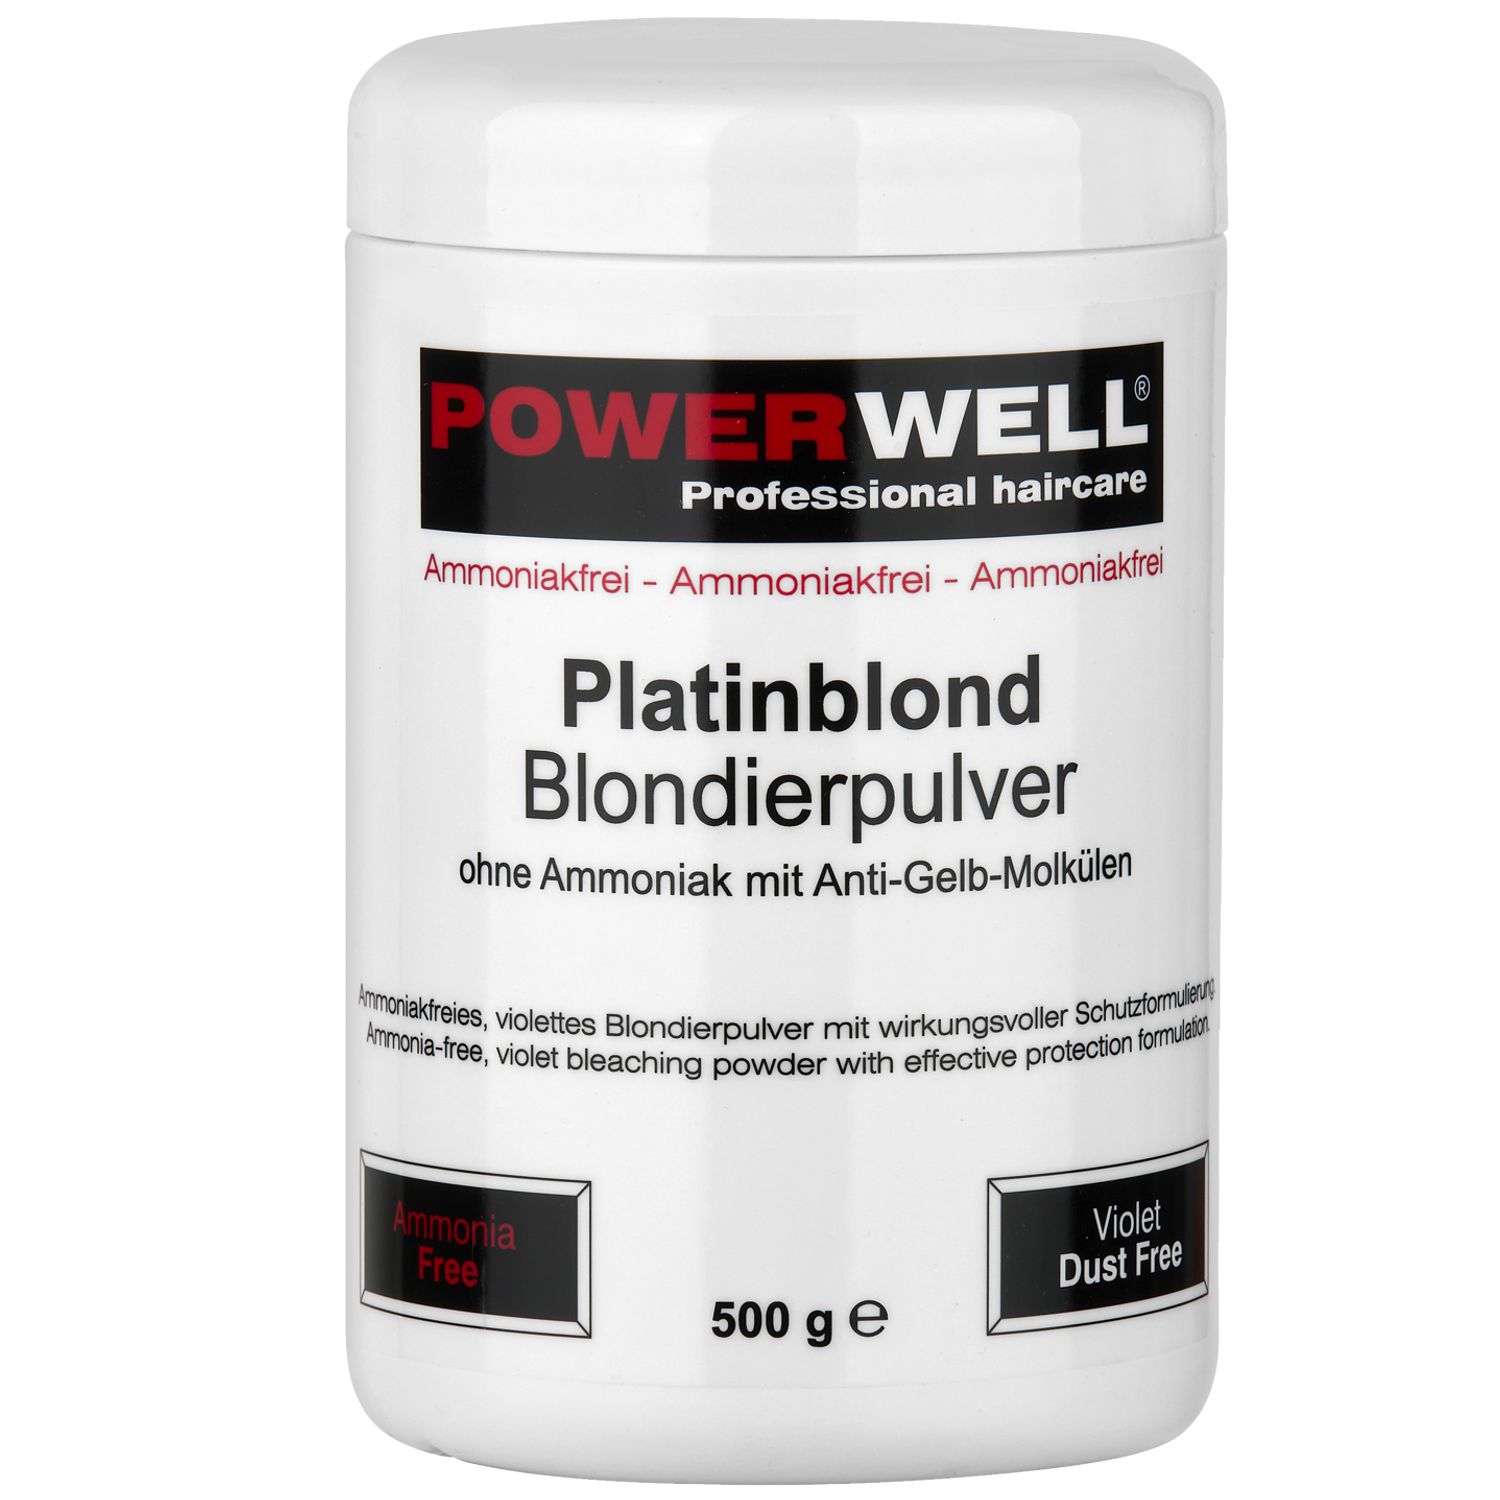 POWERWELL Blondierpulver ohne Ammoniak platinblond 500 g